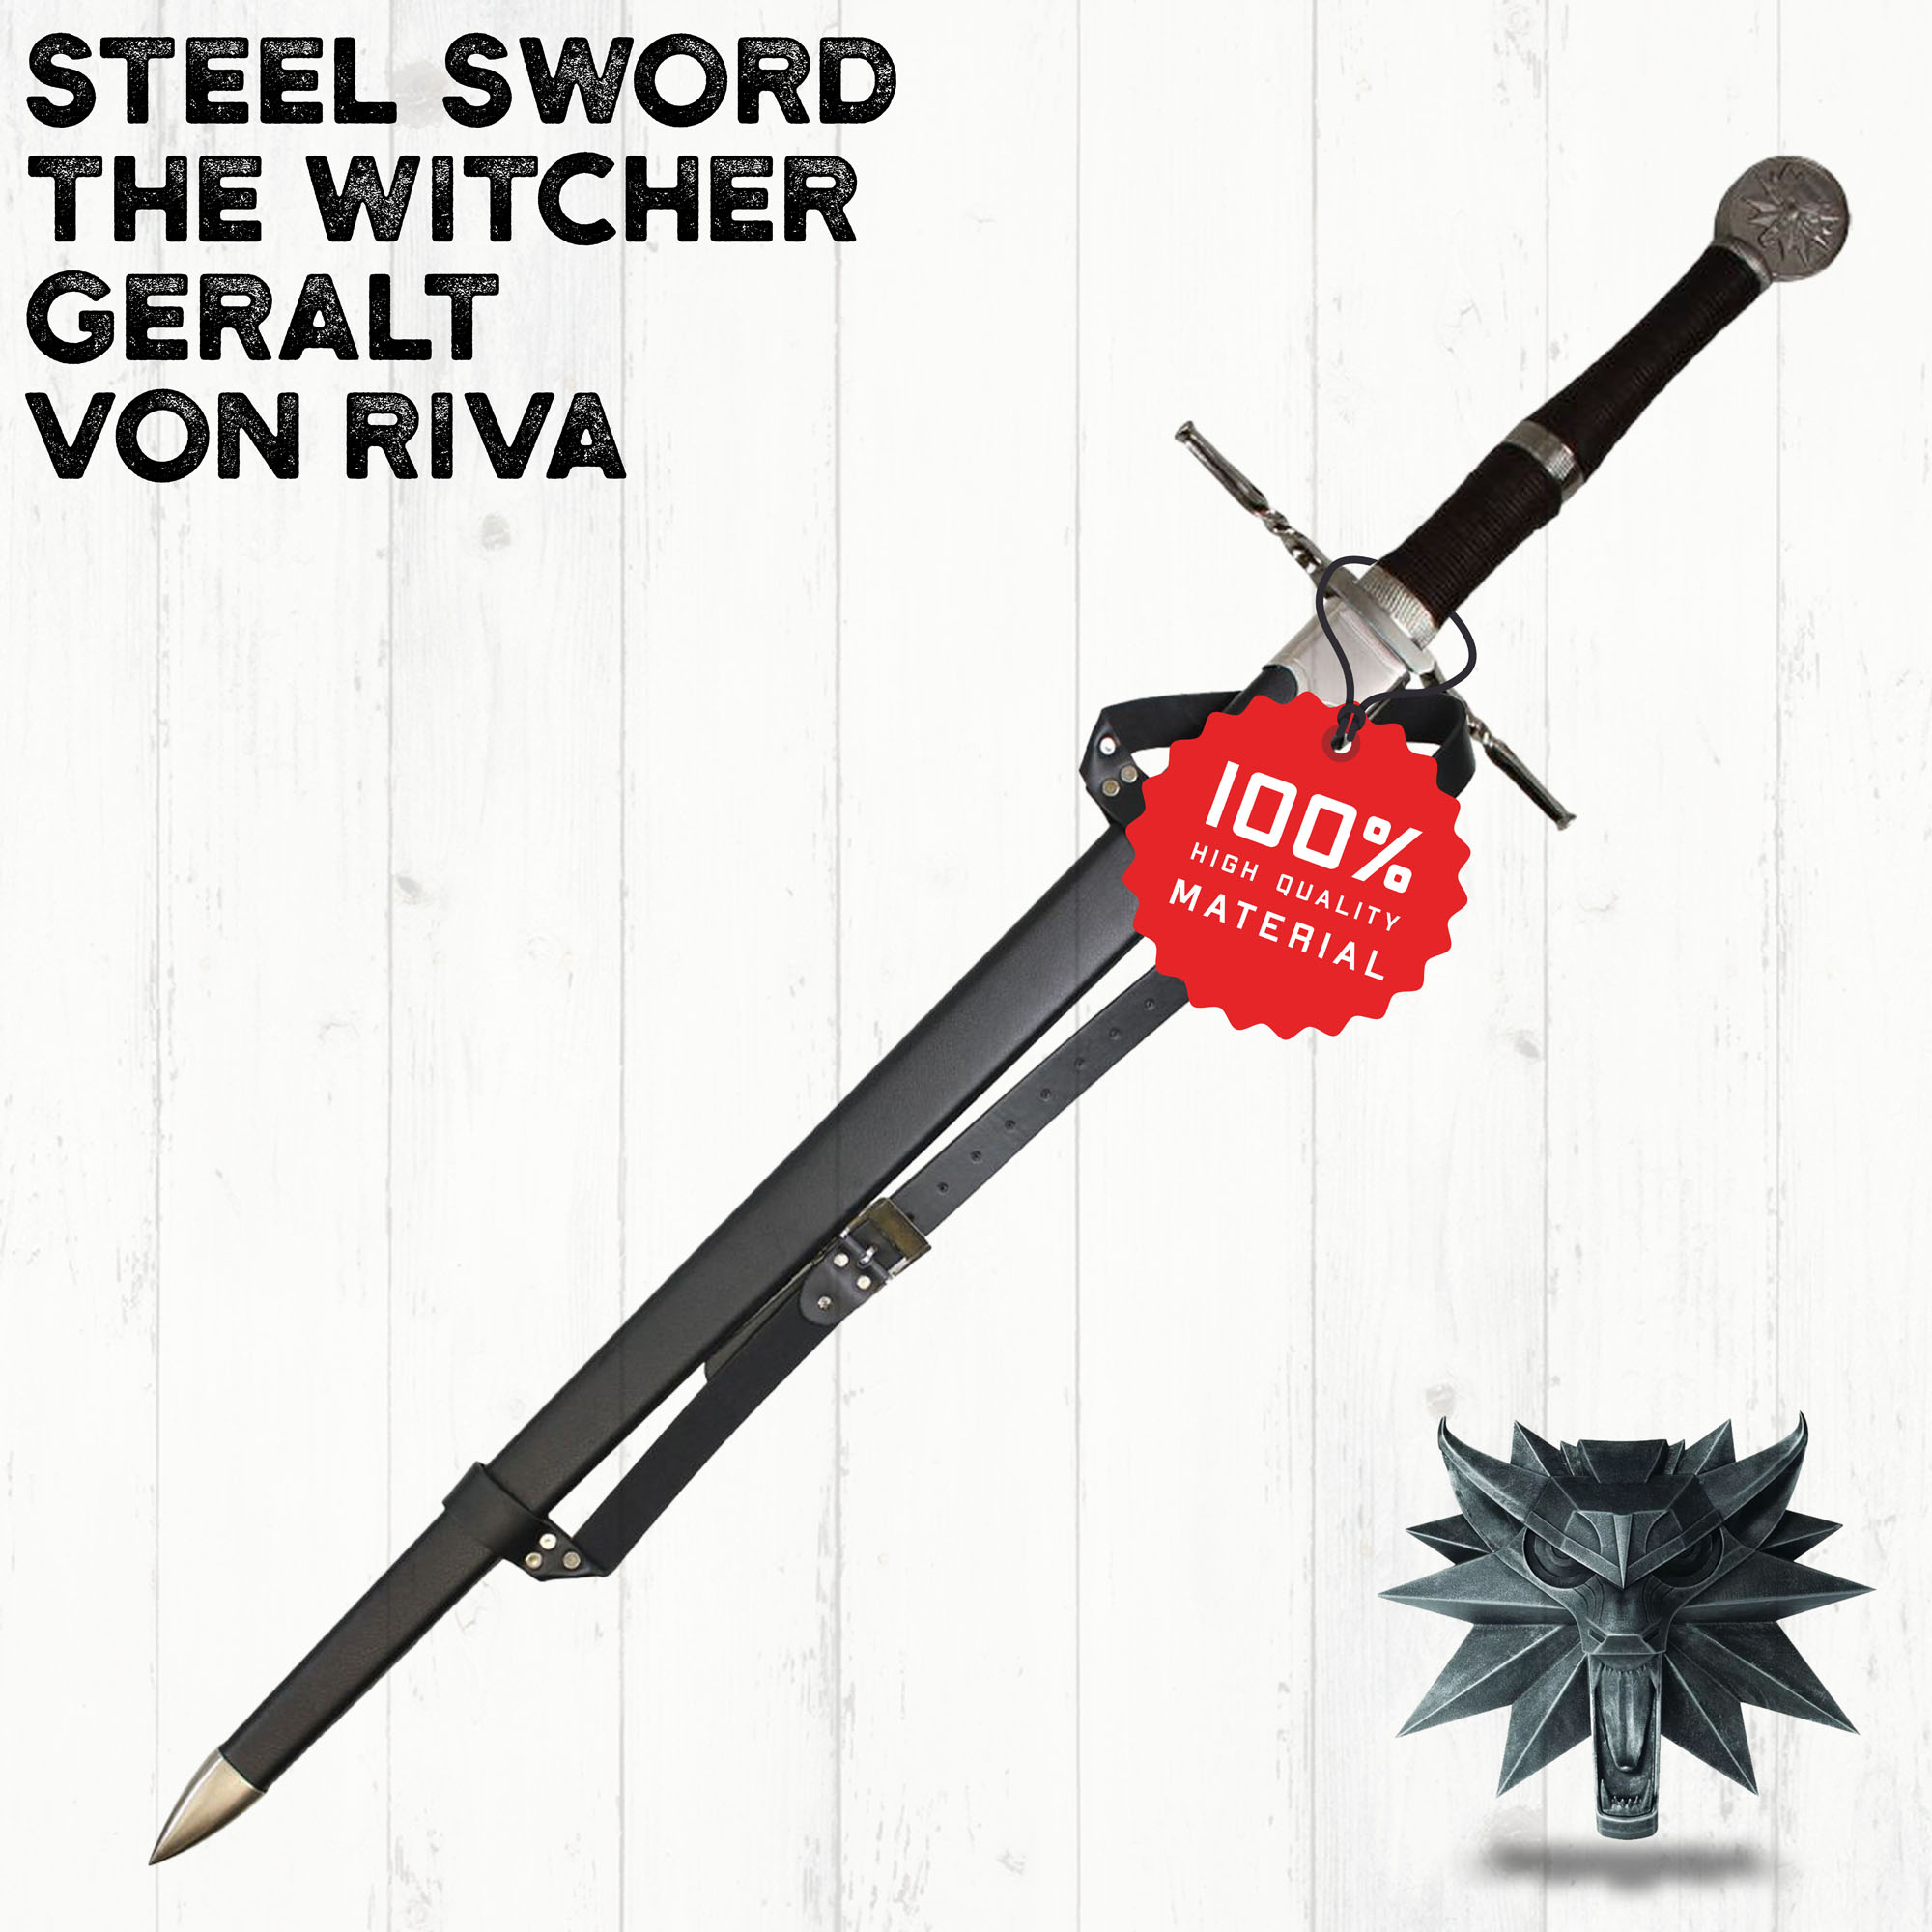 Witcher - Stahl Schwert mit Scheide, handgeschmiedet und gefaltet